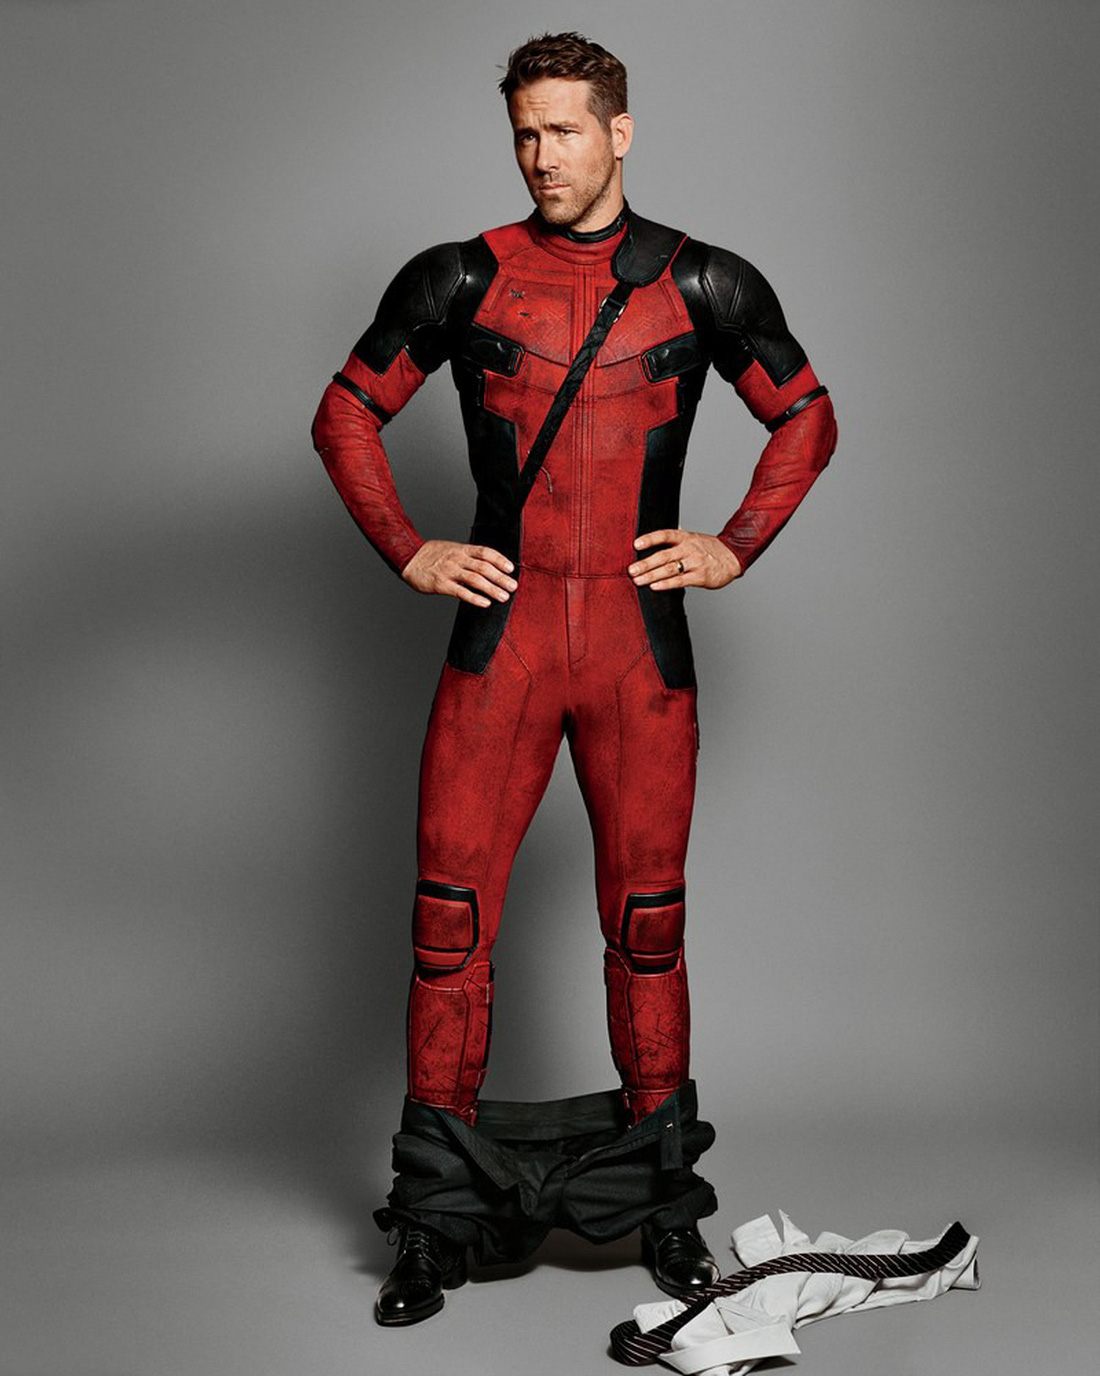 Ryan Reynolds: nhan sắc mỹ nam tỏa sáng Deadpool vừa dị vừa xấu trai - Ảnh 4.